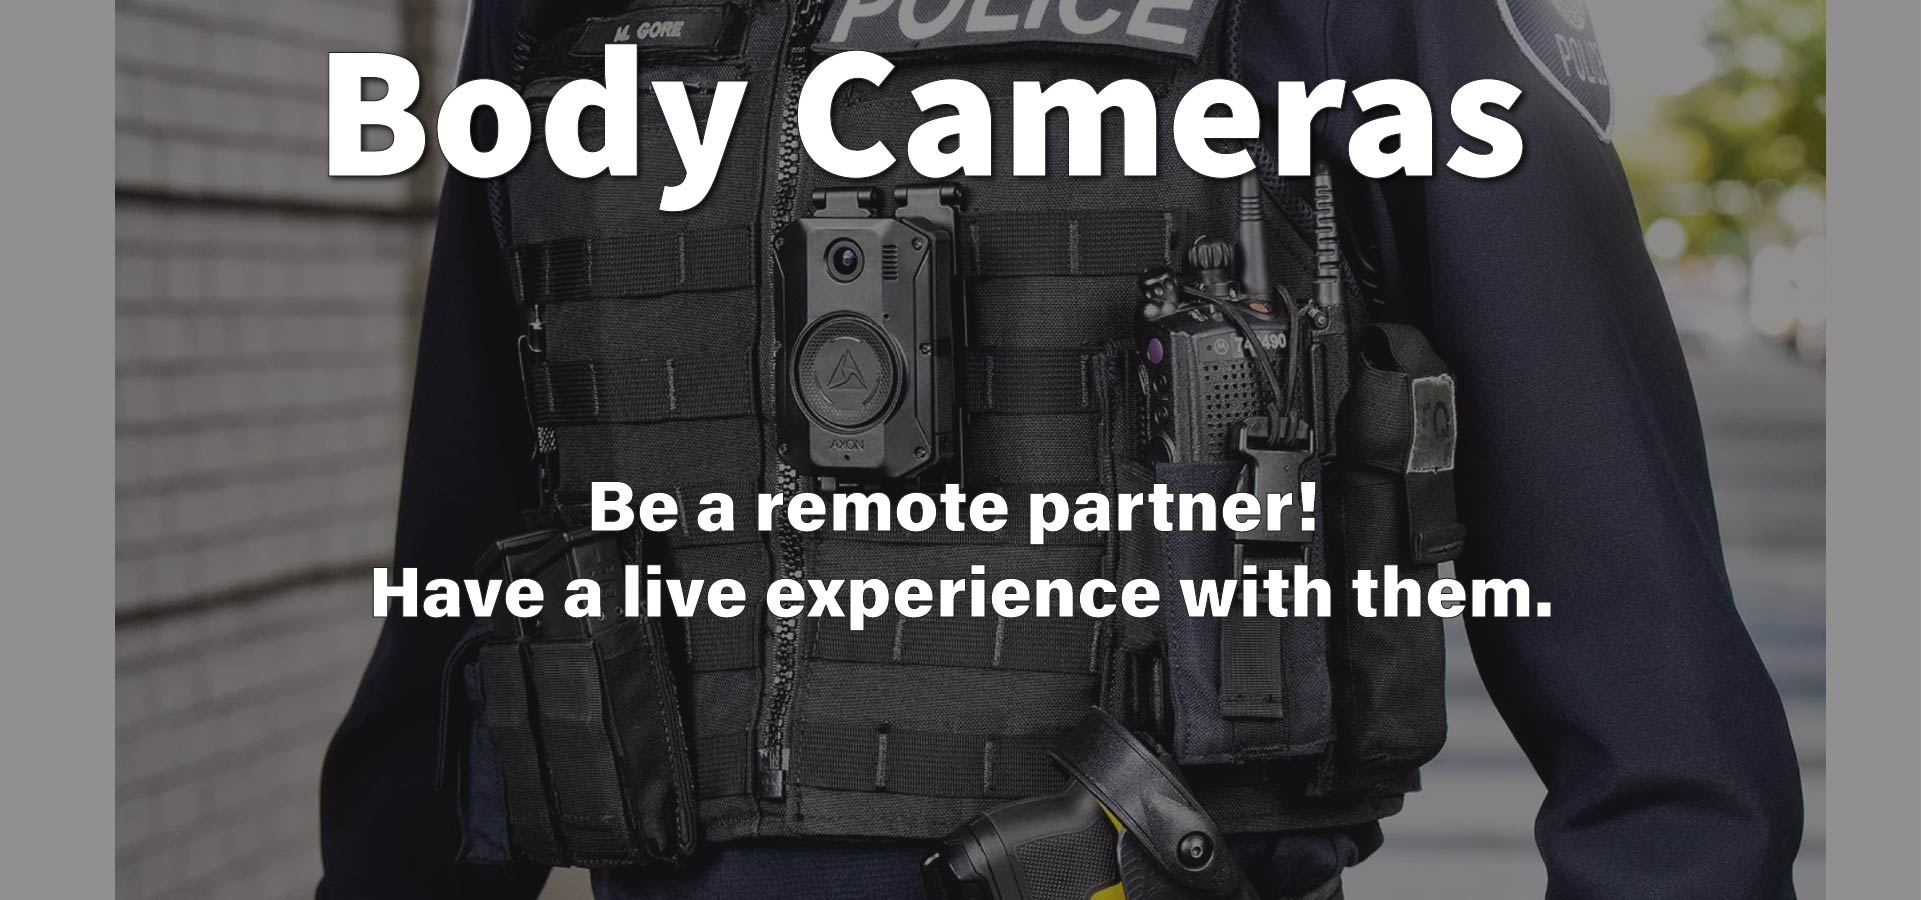 Body cameras